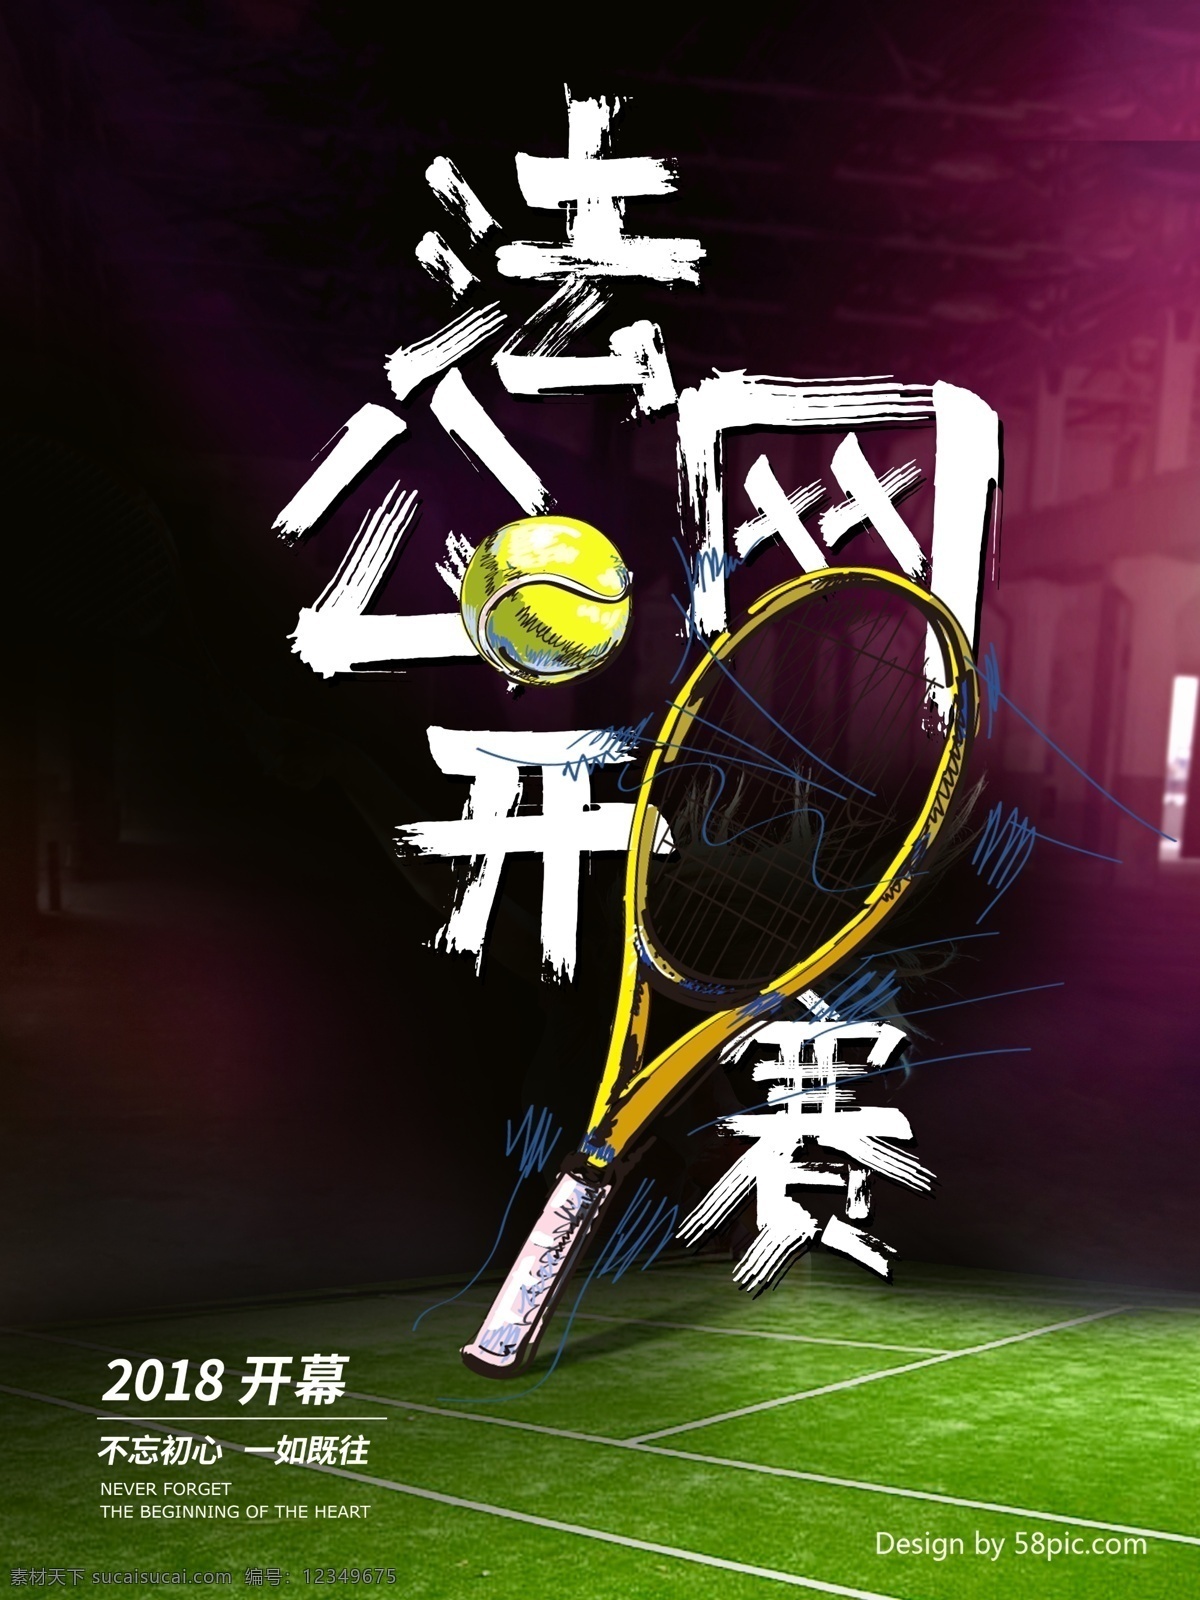 法网 公开赛 开幕 体育 海报 网球 比赛 2018 网球拍 初心